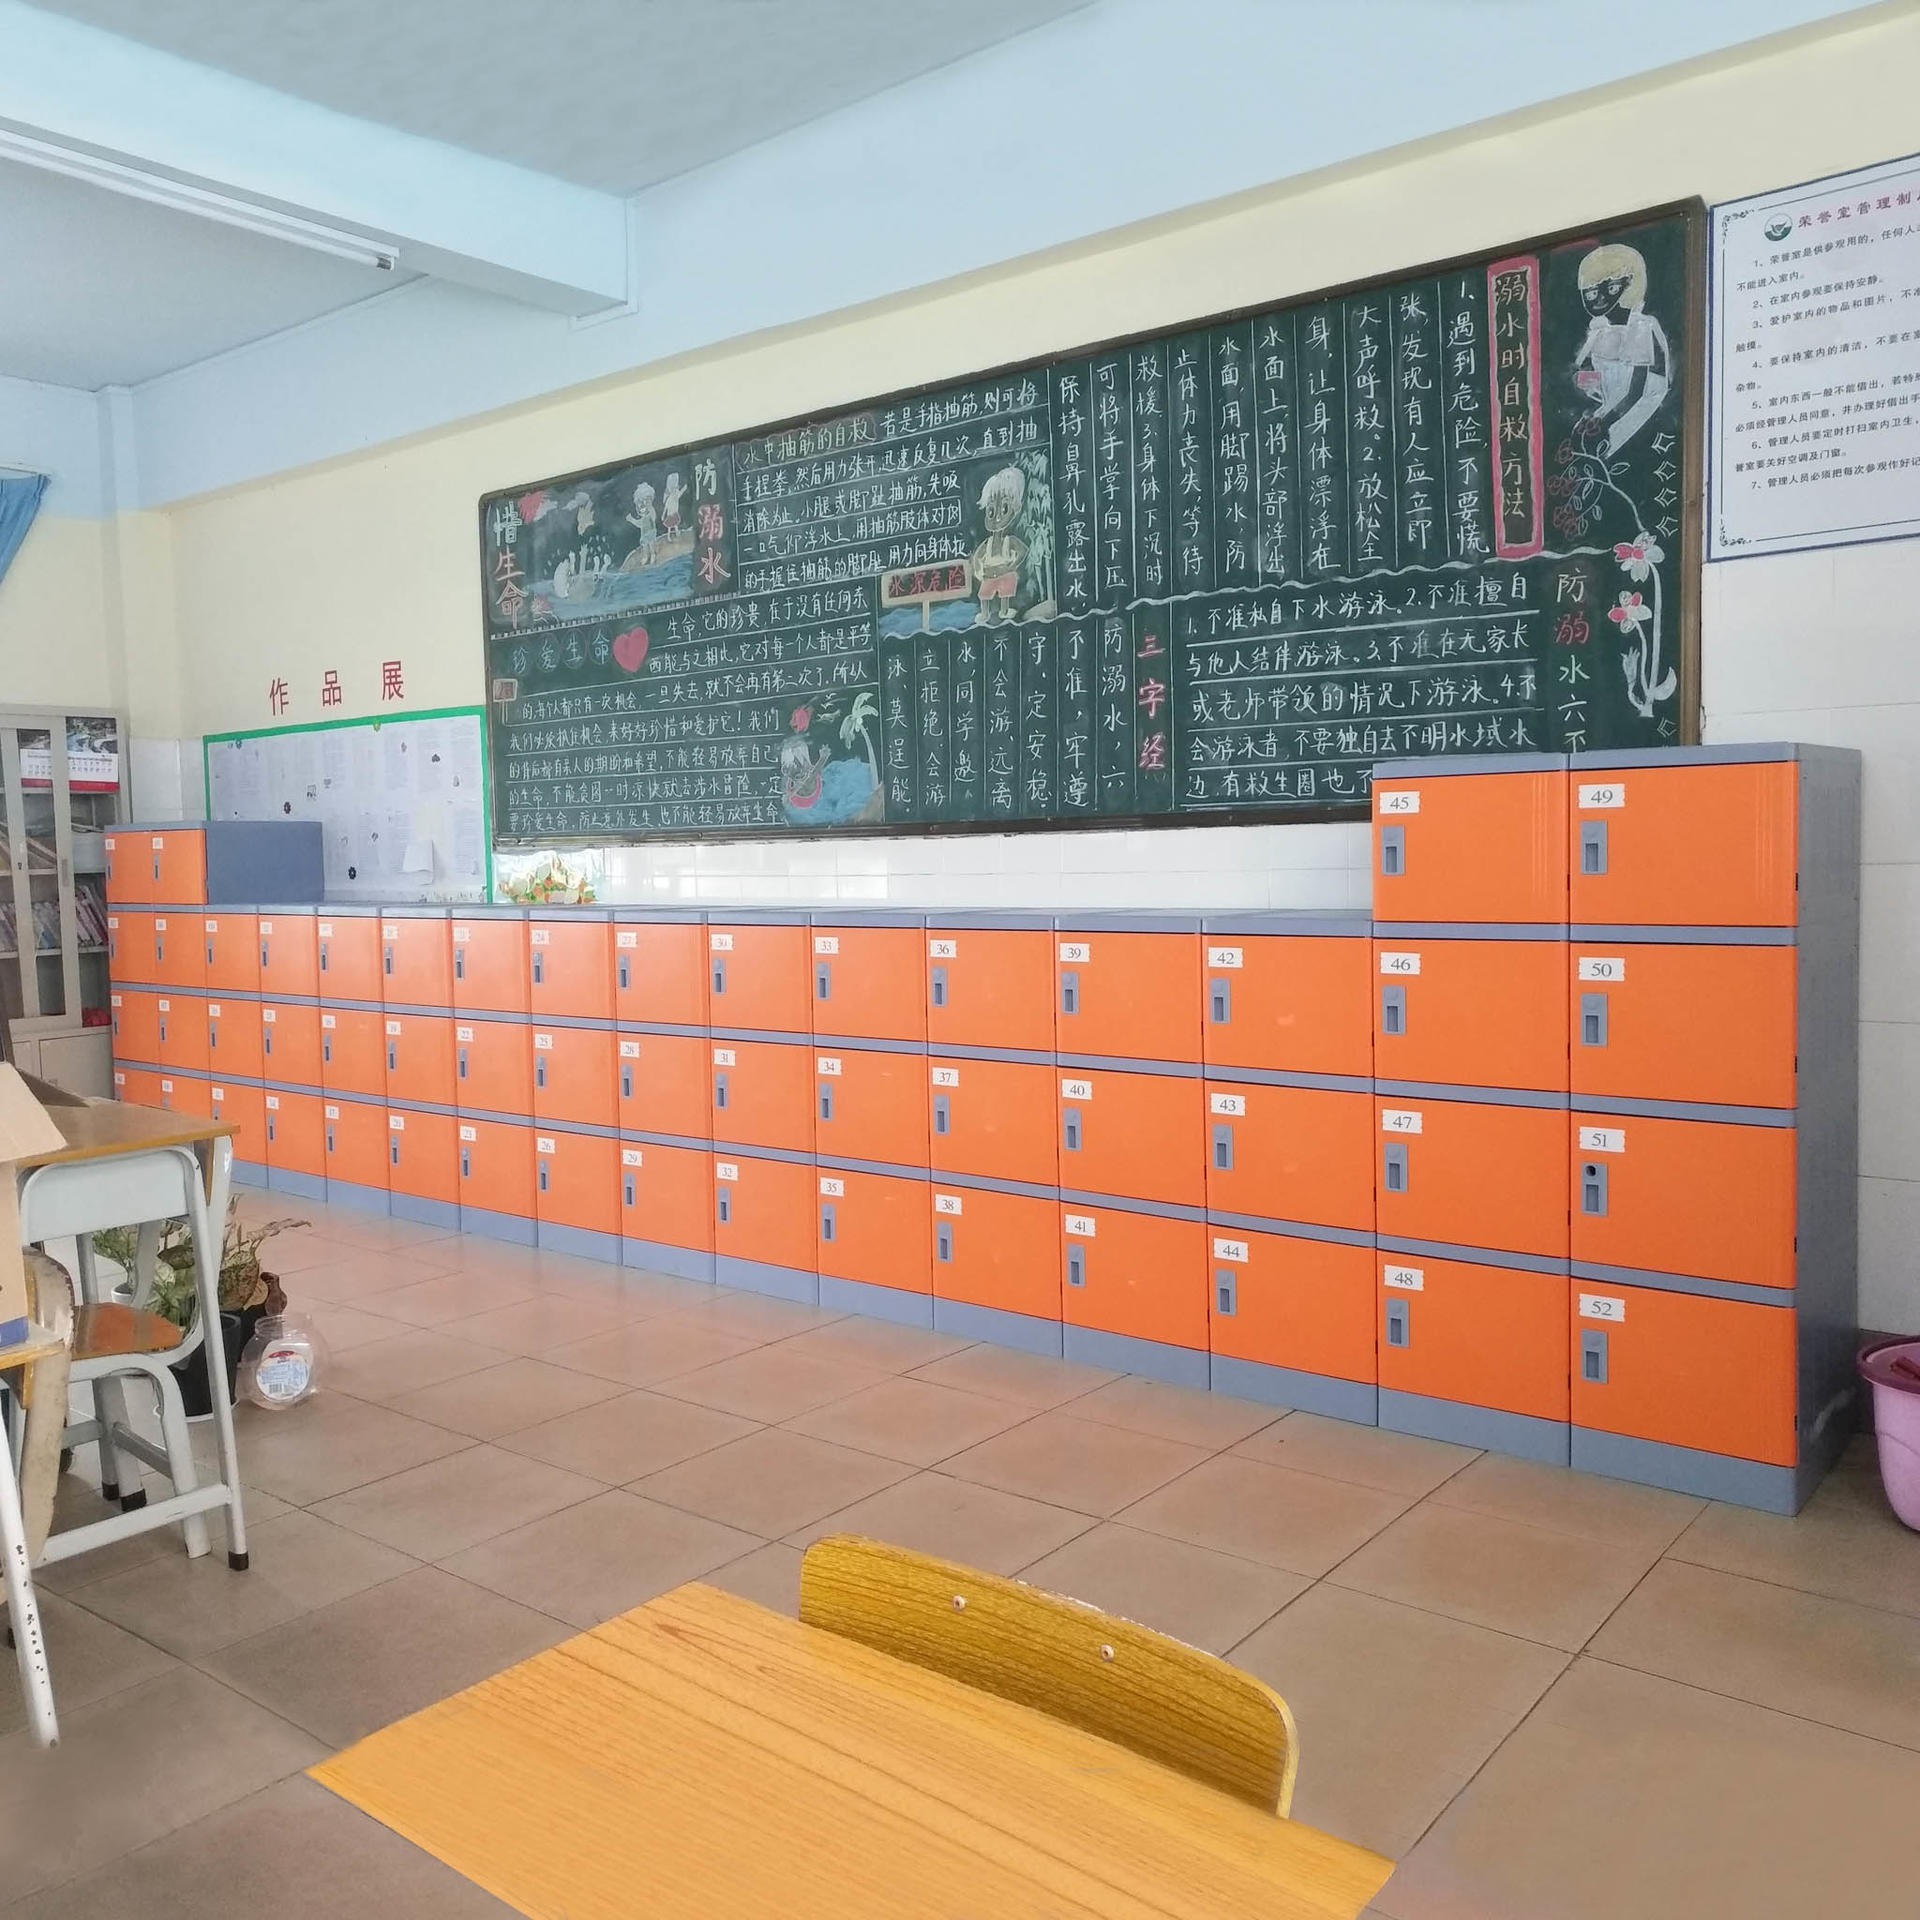 好柜子牌幼儿园abs塑料书包柜 学生宿舍储物柜  教室走廊储物柜厂家现货供应